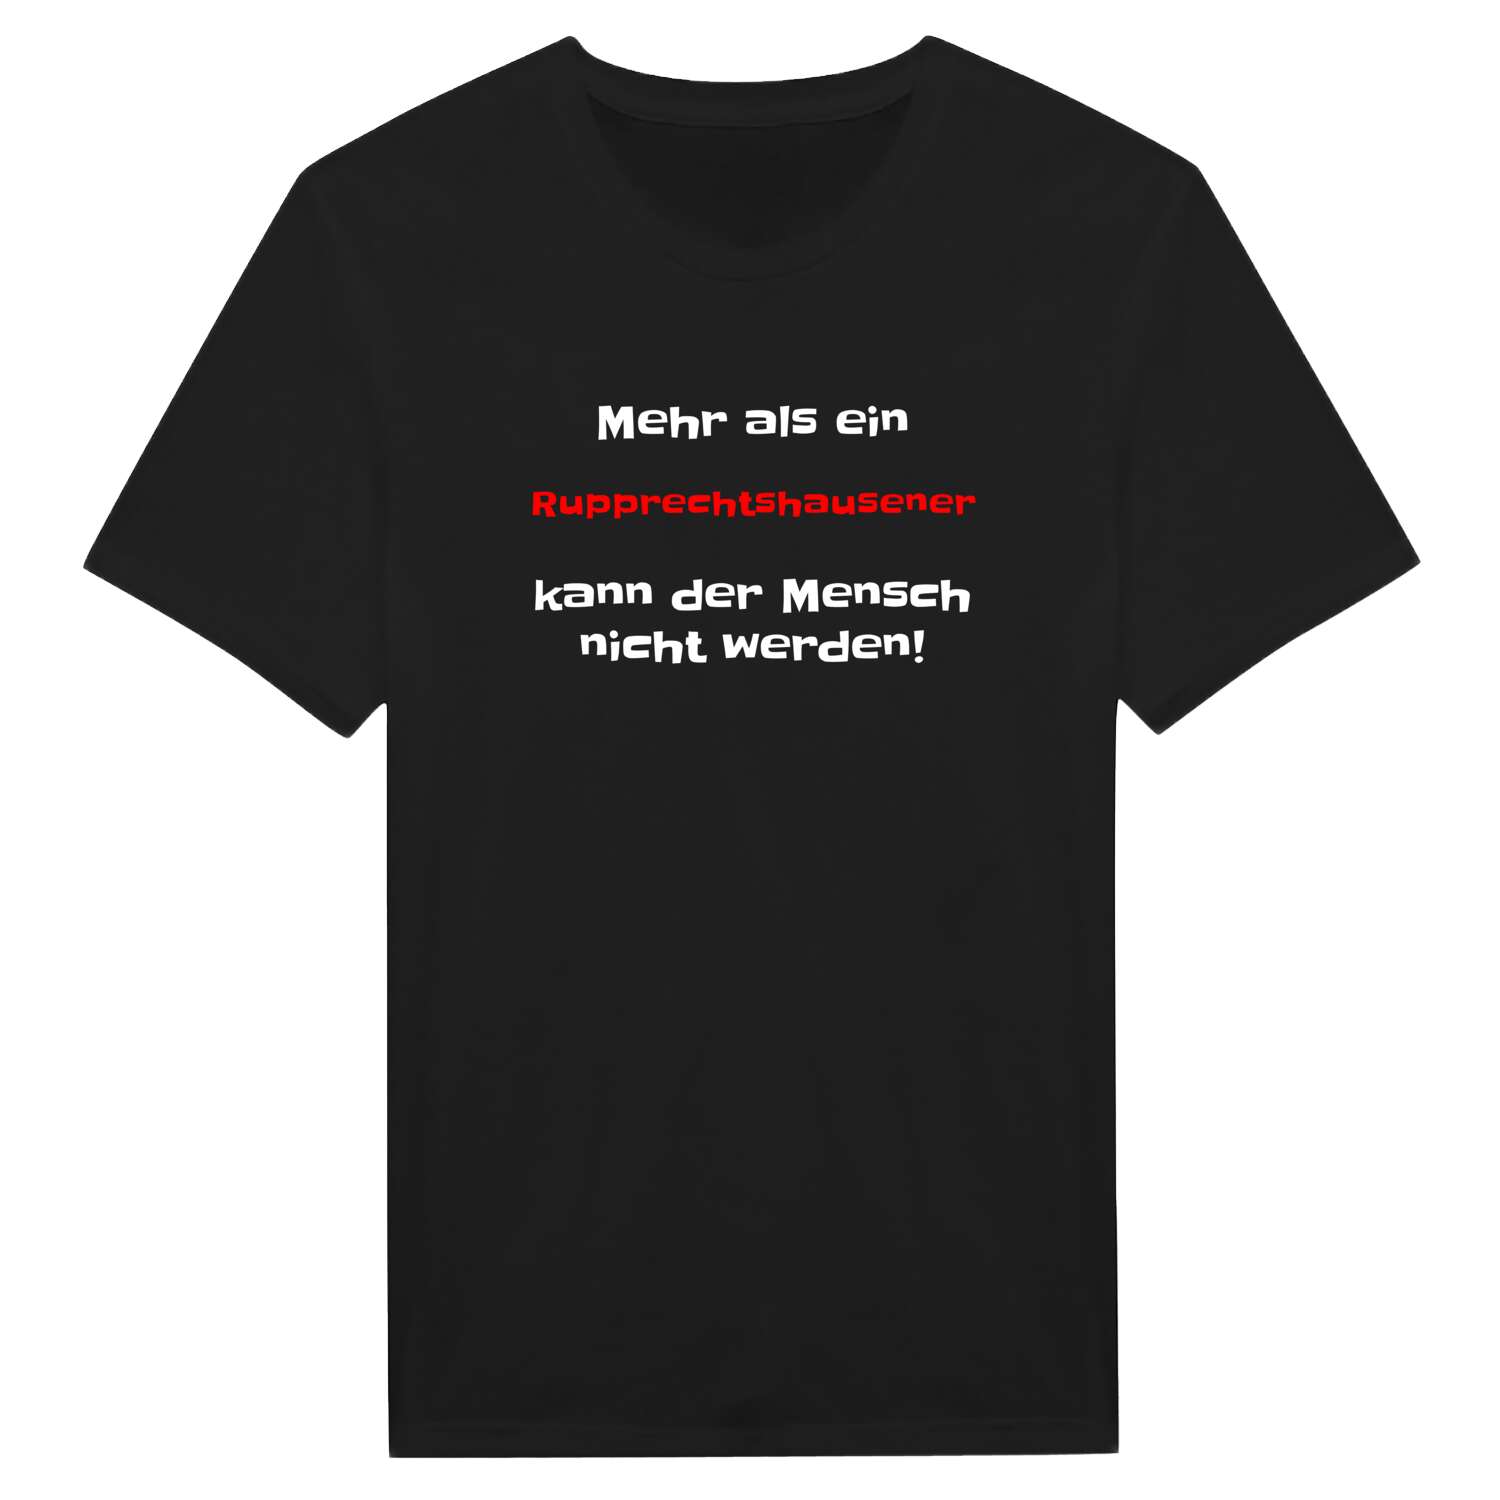 Rupprechtshausen T-Shirt »Mehr als ein«